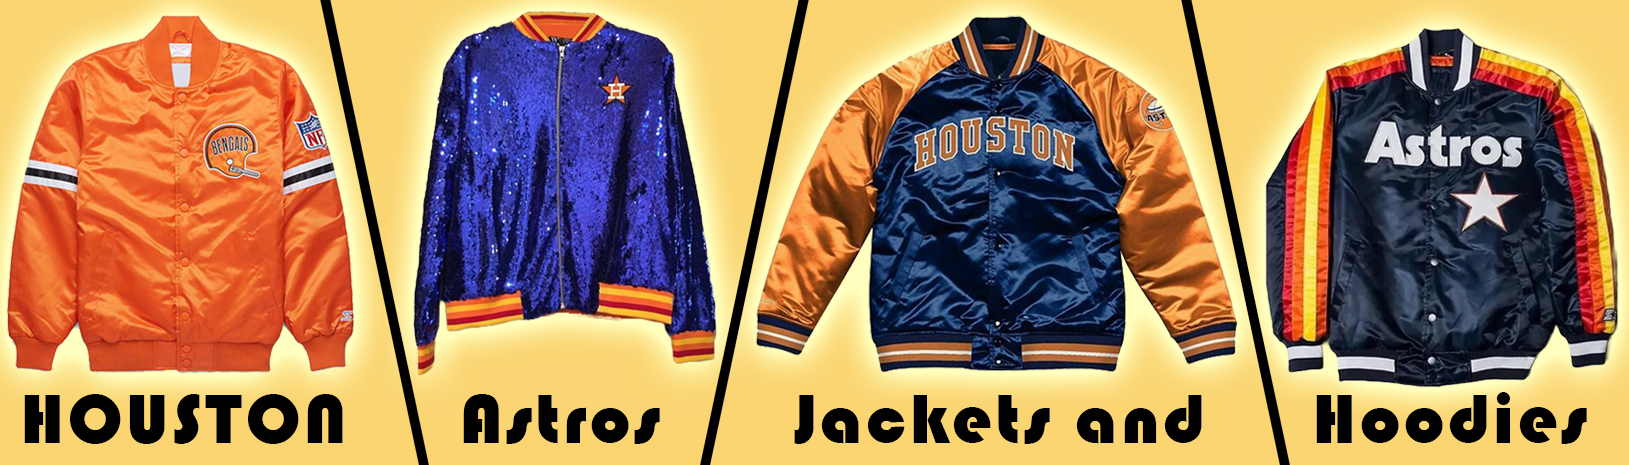 Houston Astros Jackets and Coats